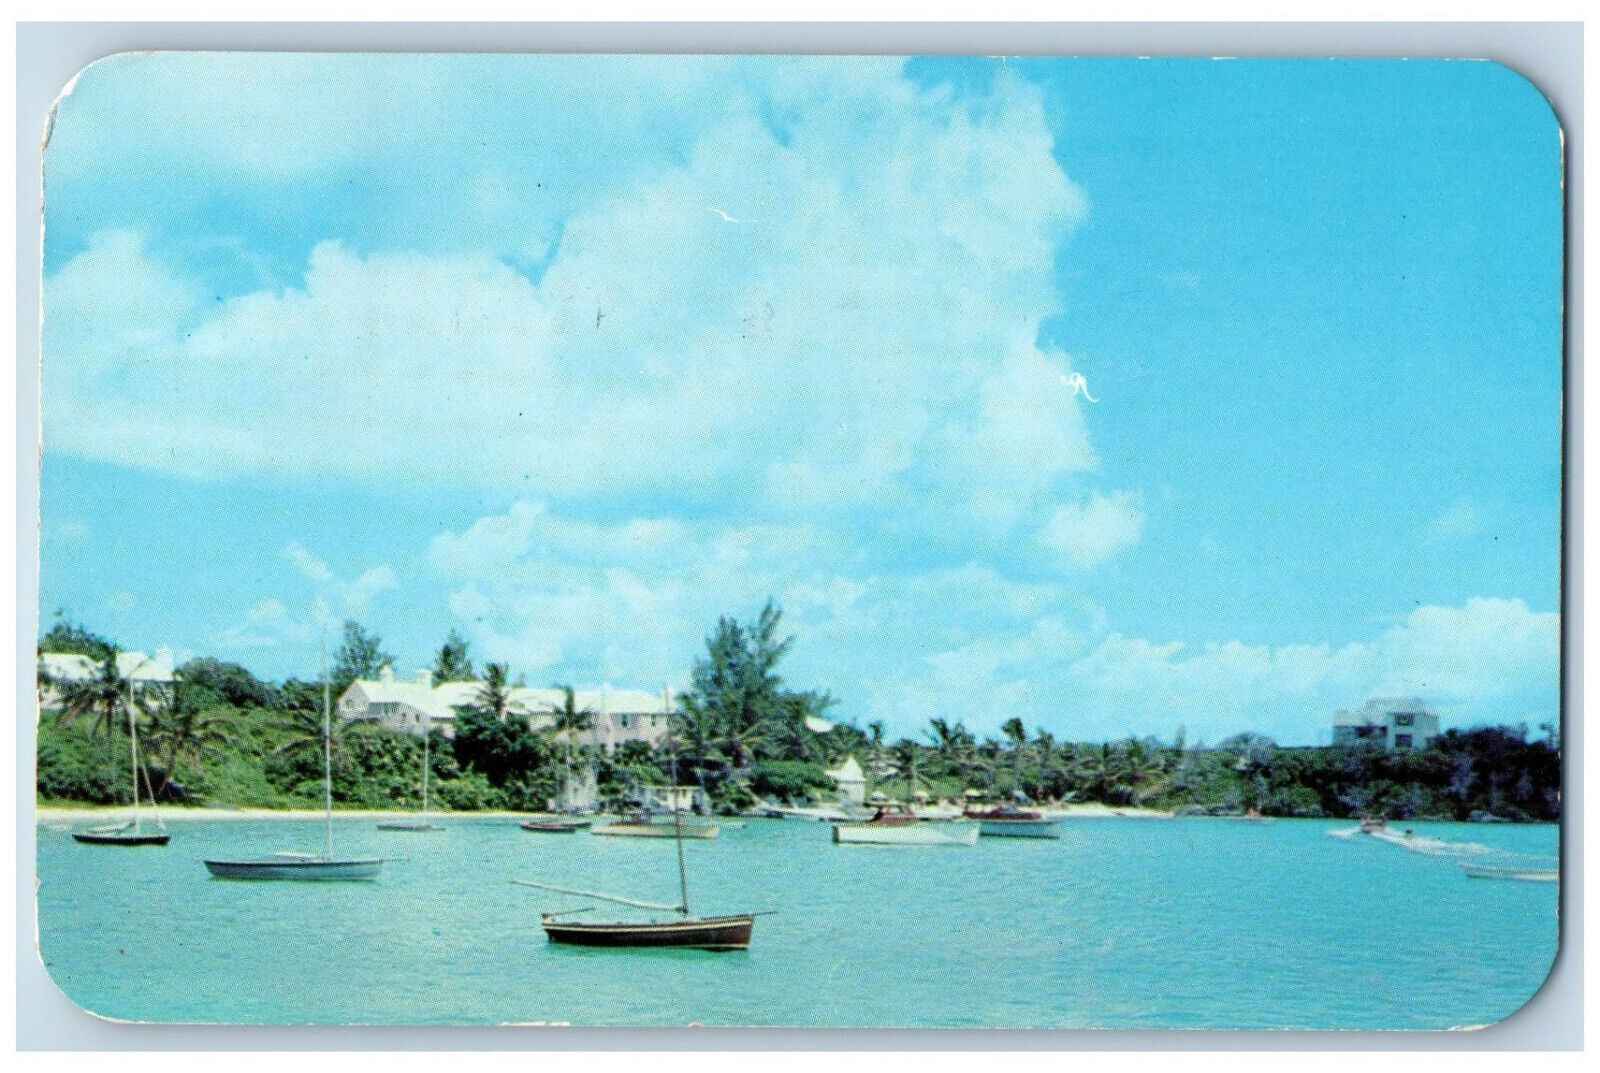 St. Georges Bermuda Postcard Mangrove Bay Beautiful Sheet of Water 1953 Vintage